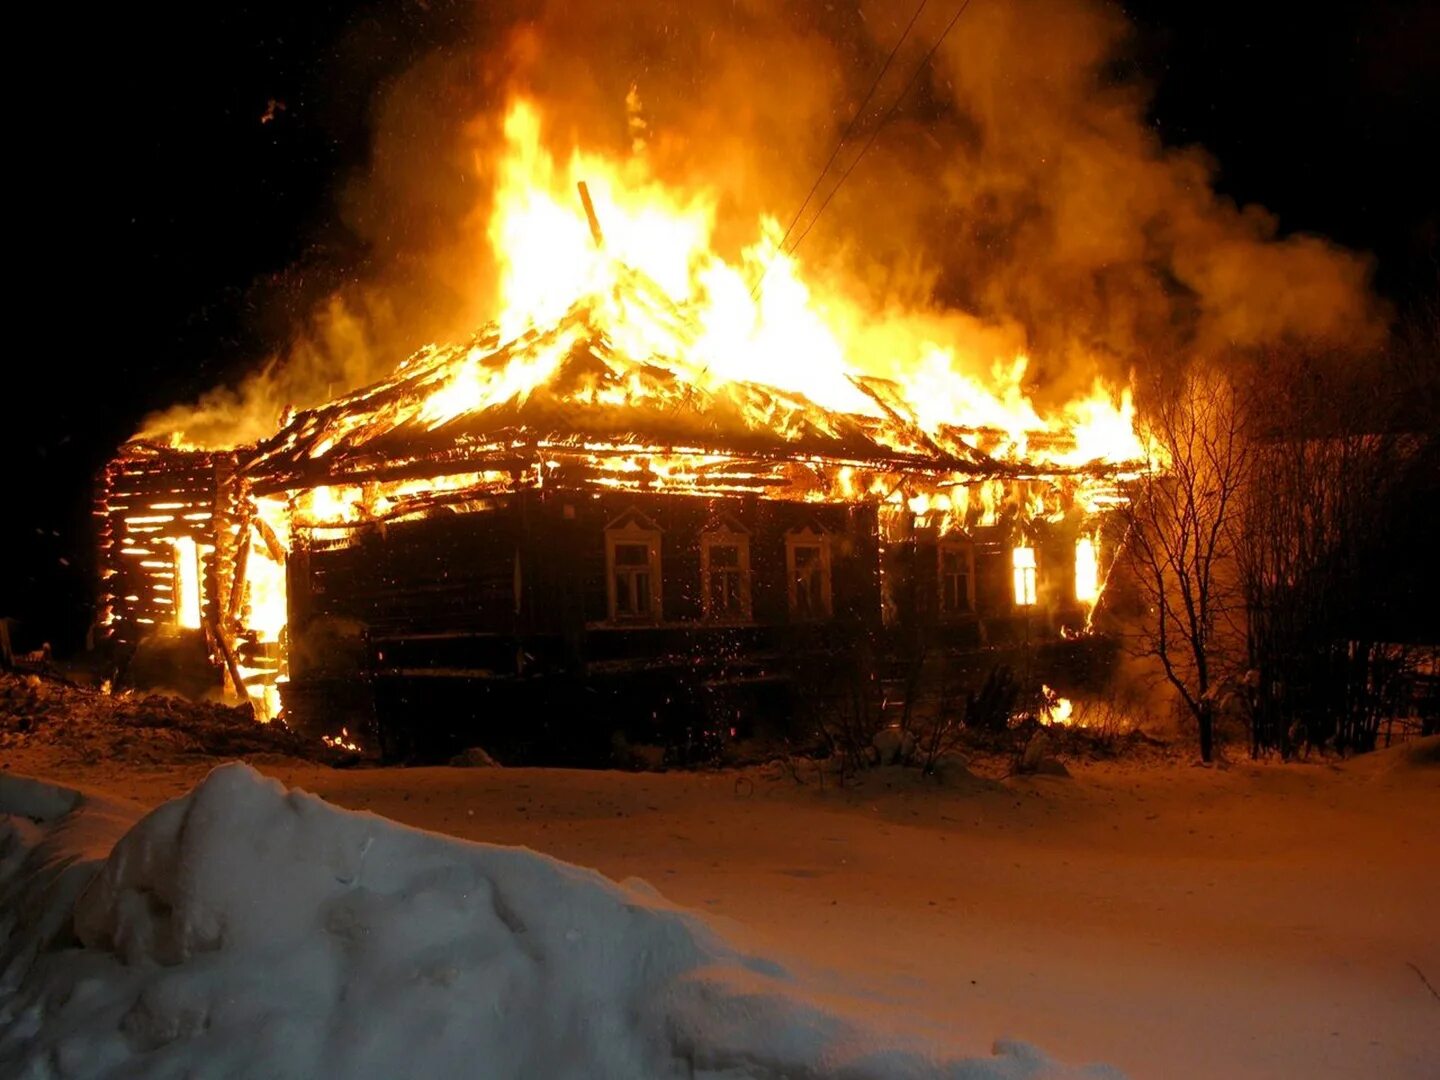 11 января 2023 г. Дом горит. Горящий дом в деревне. Гарещтй дом. Пожар в доме.